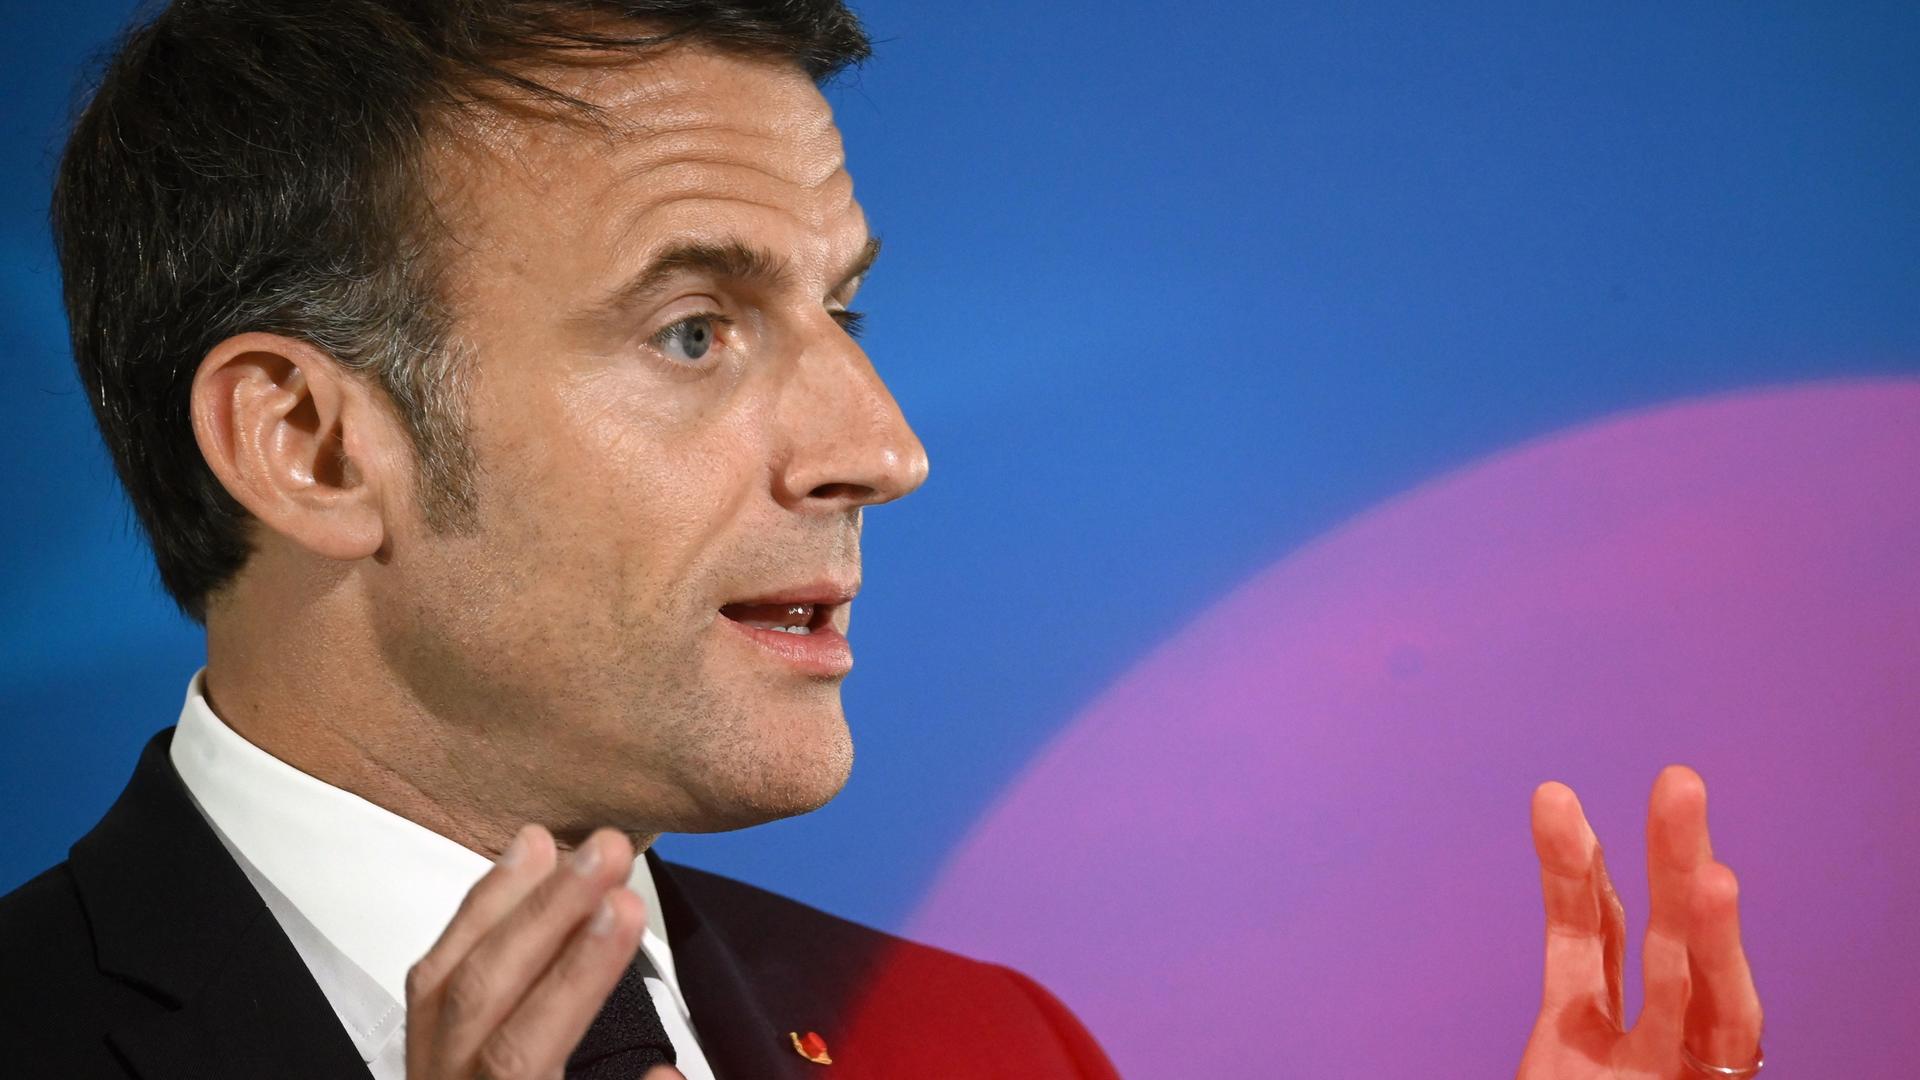 Emmanuel Macron redet vor blauem Hintergrund und gestikuliert dabei.